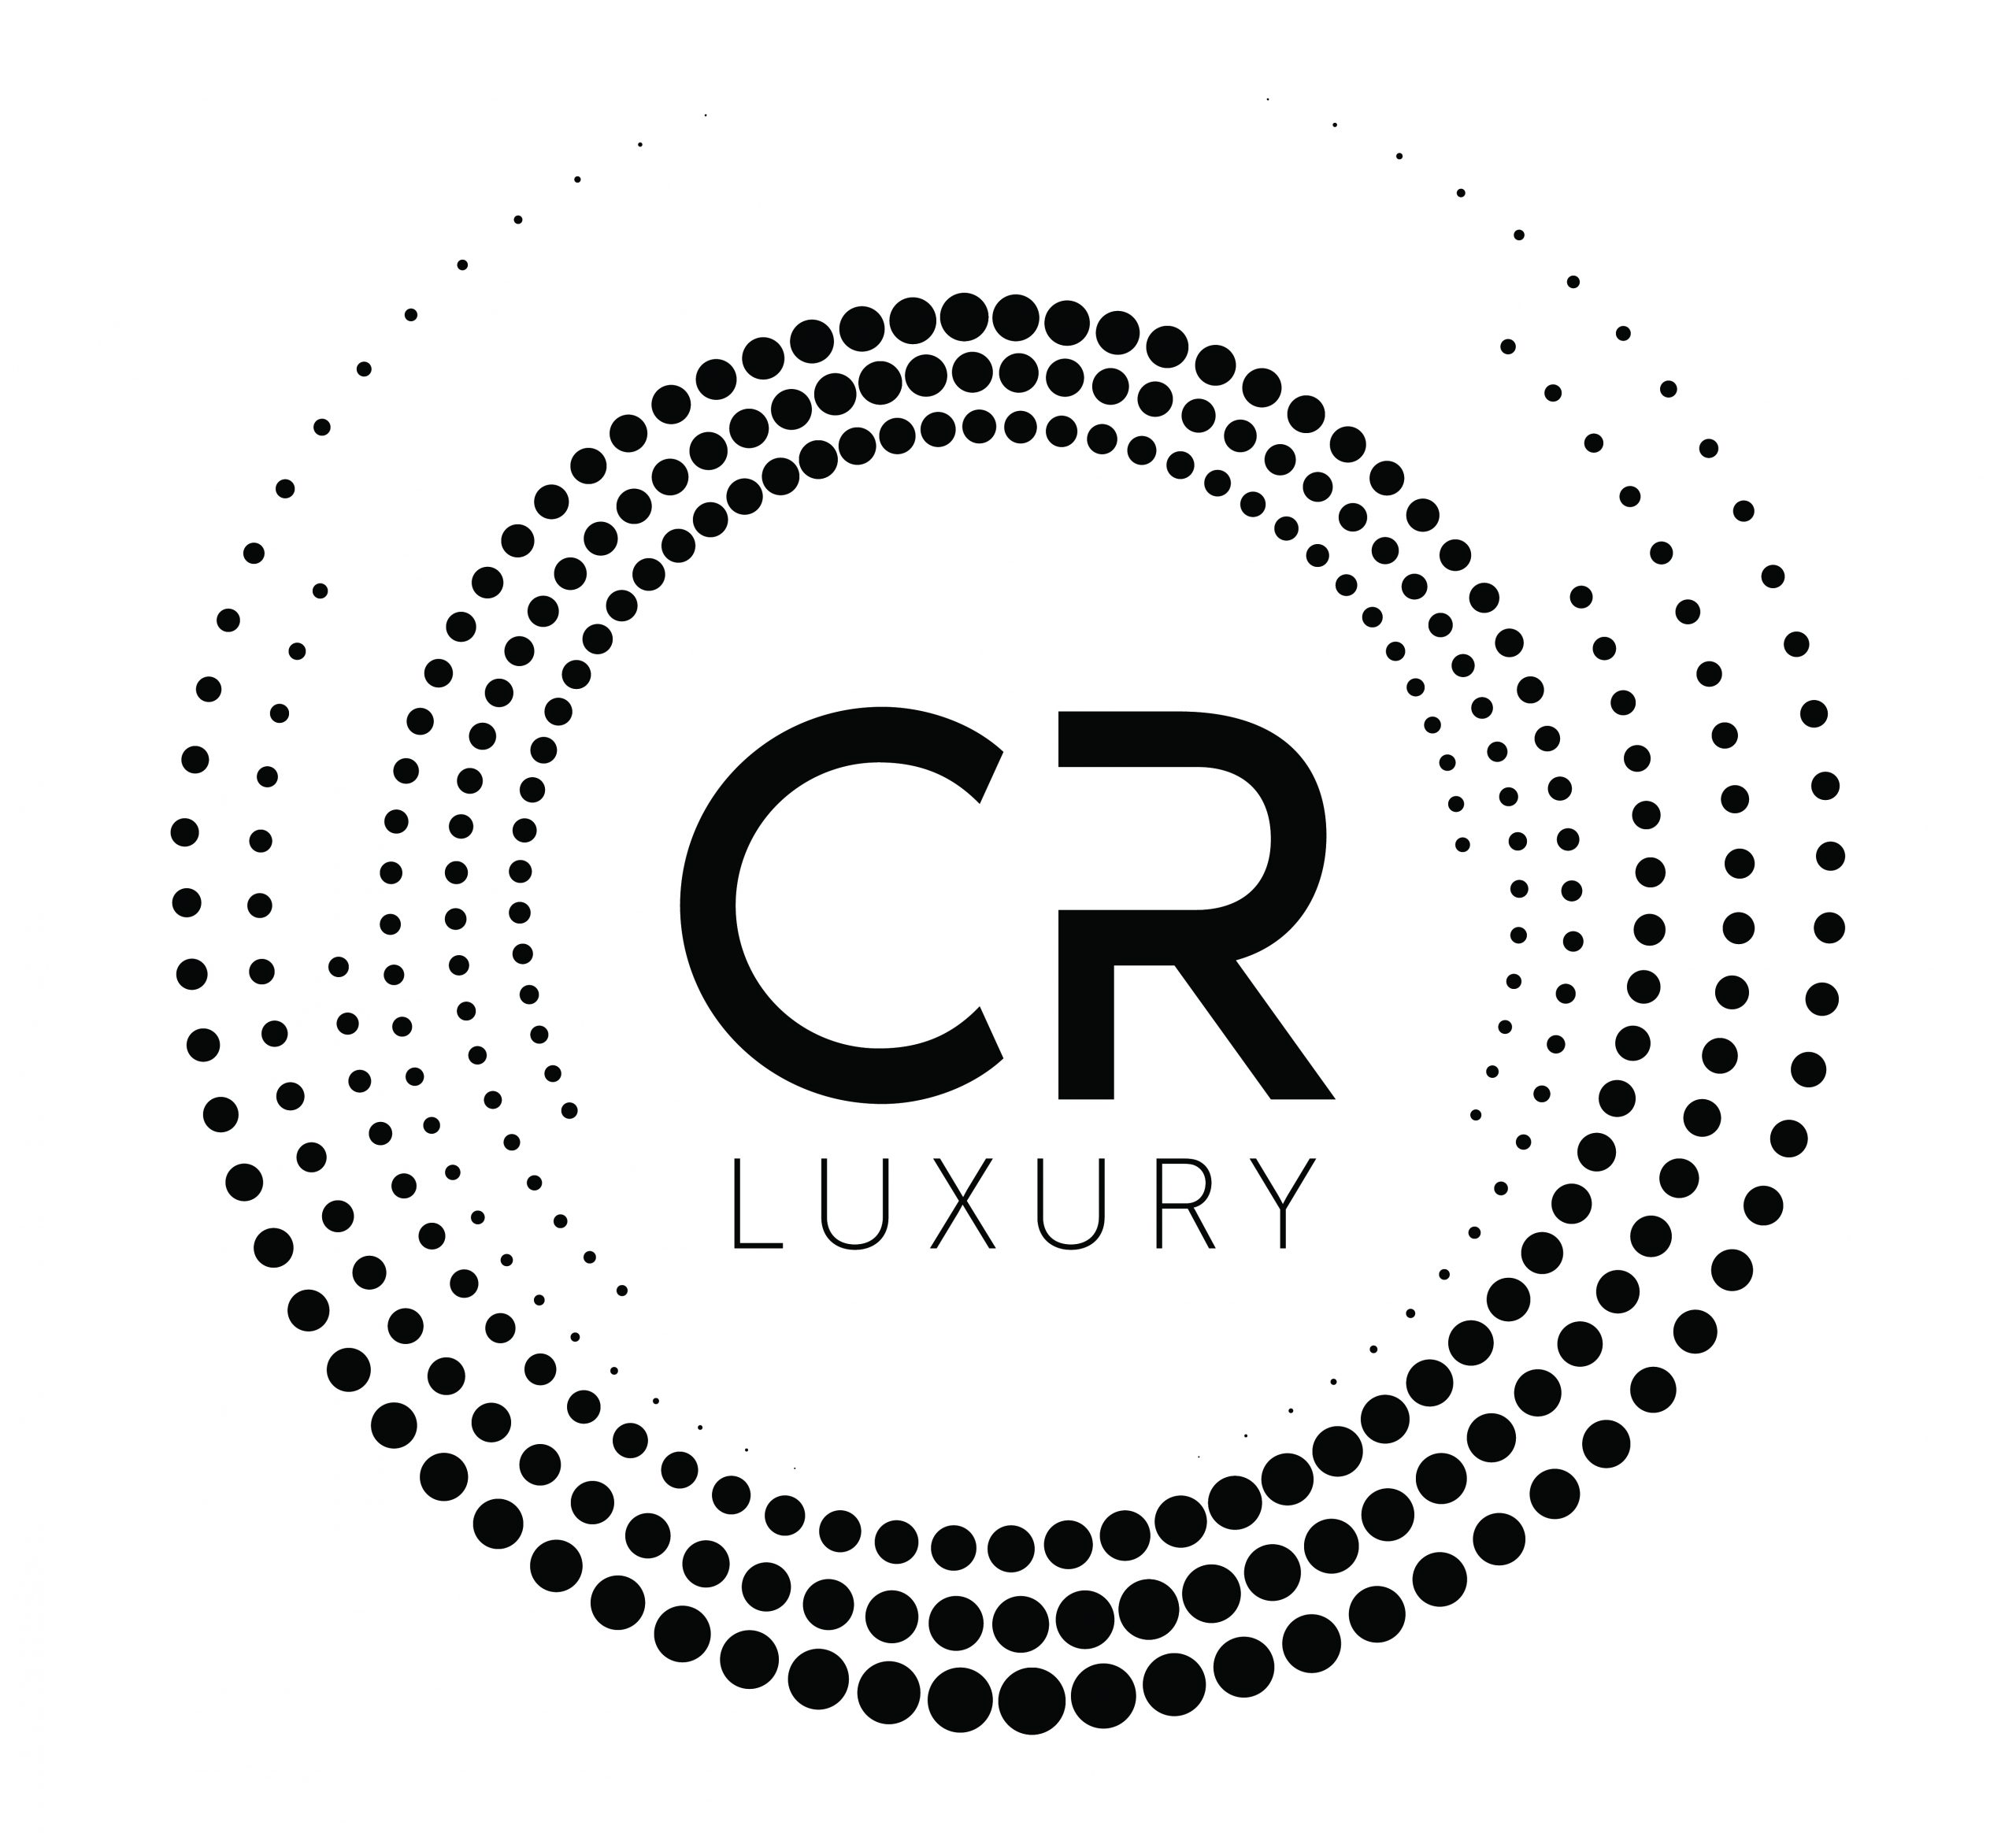 CR Luxury-01